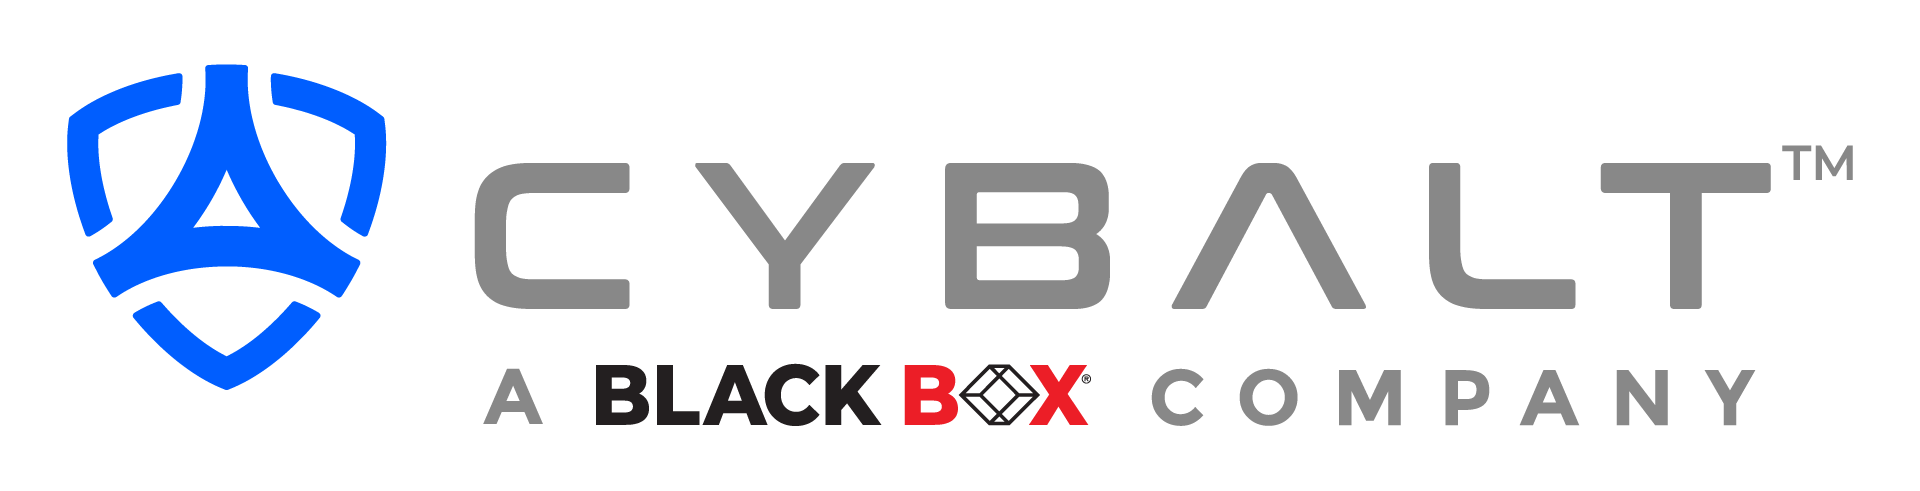 cybalt_logo